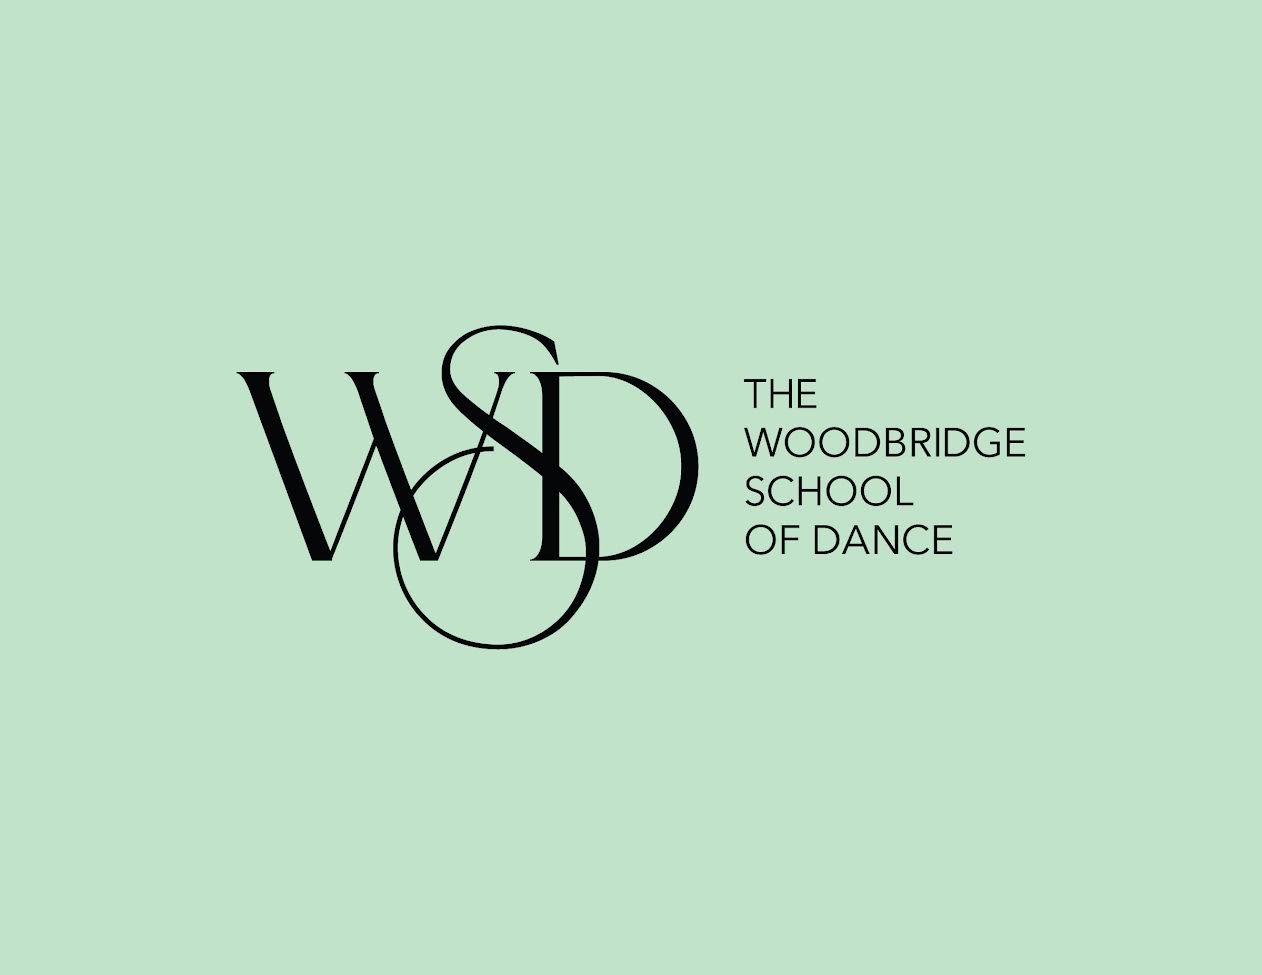 The Woodbridge School of Dance